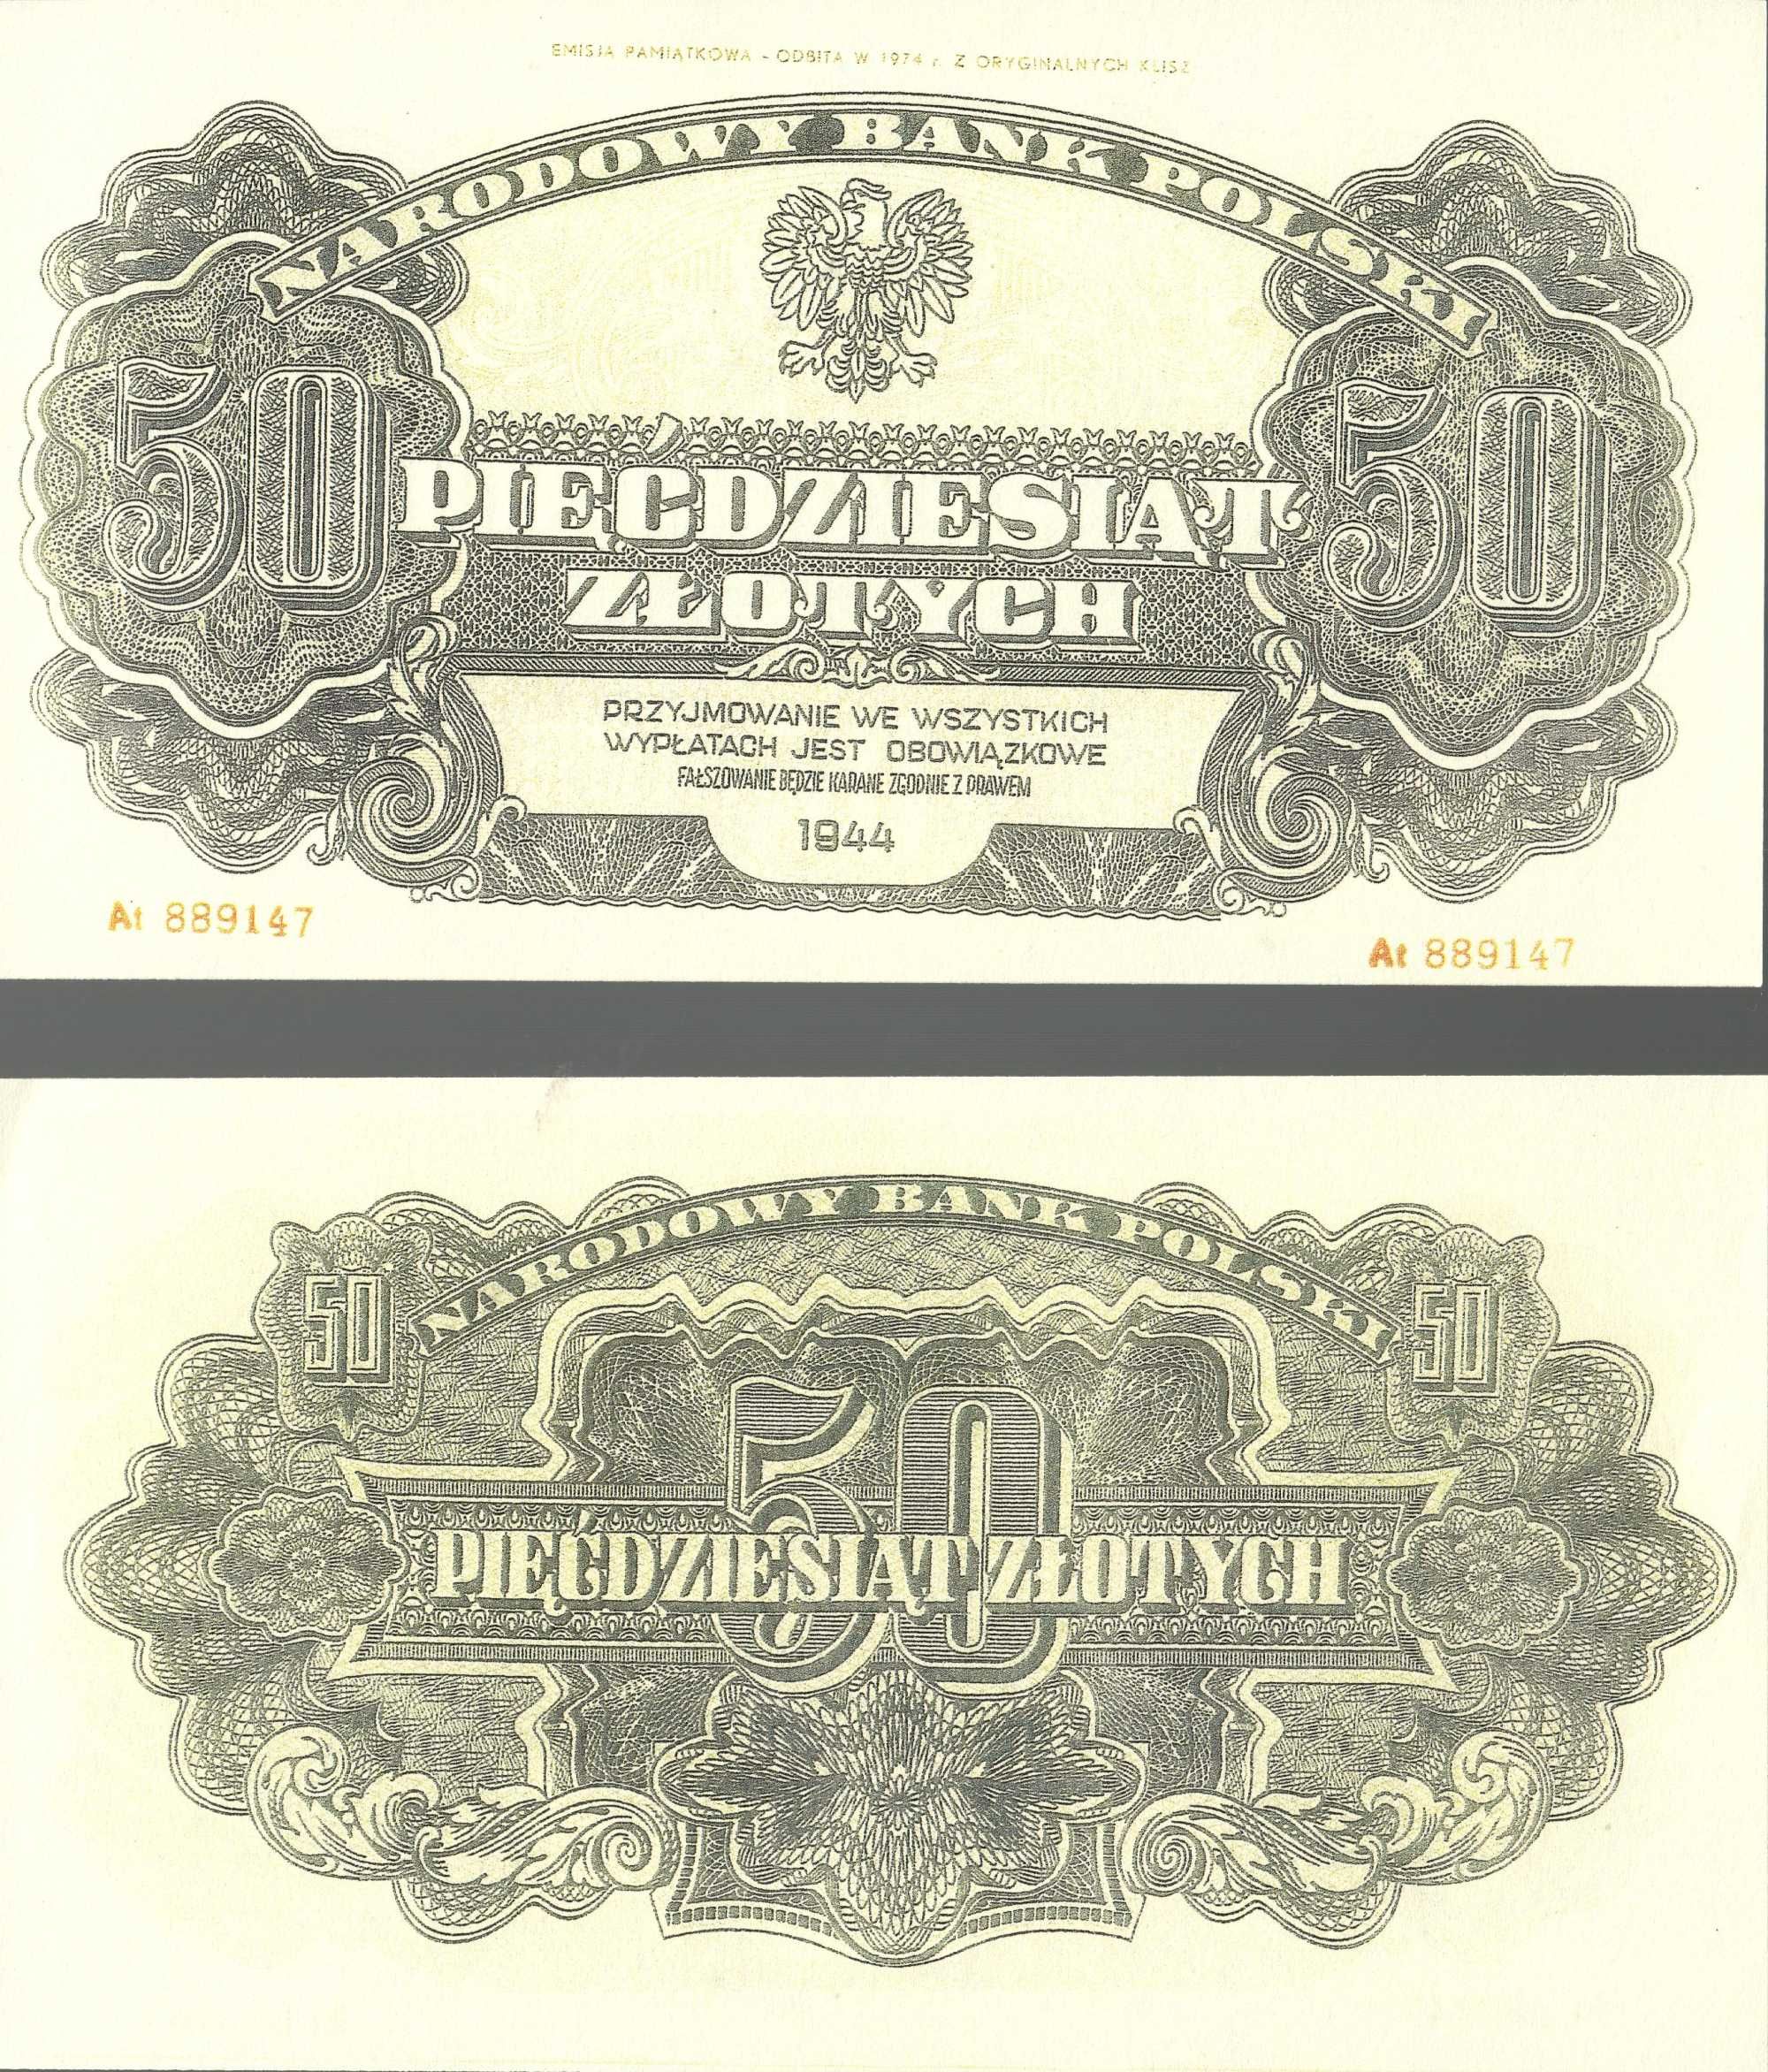 Kopie Banknotów z 1945 roku wydanie Lubelskie Nr.1